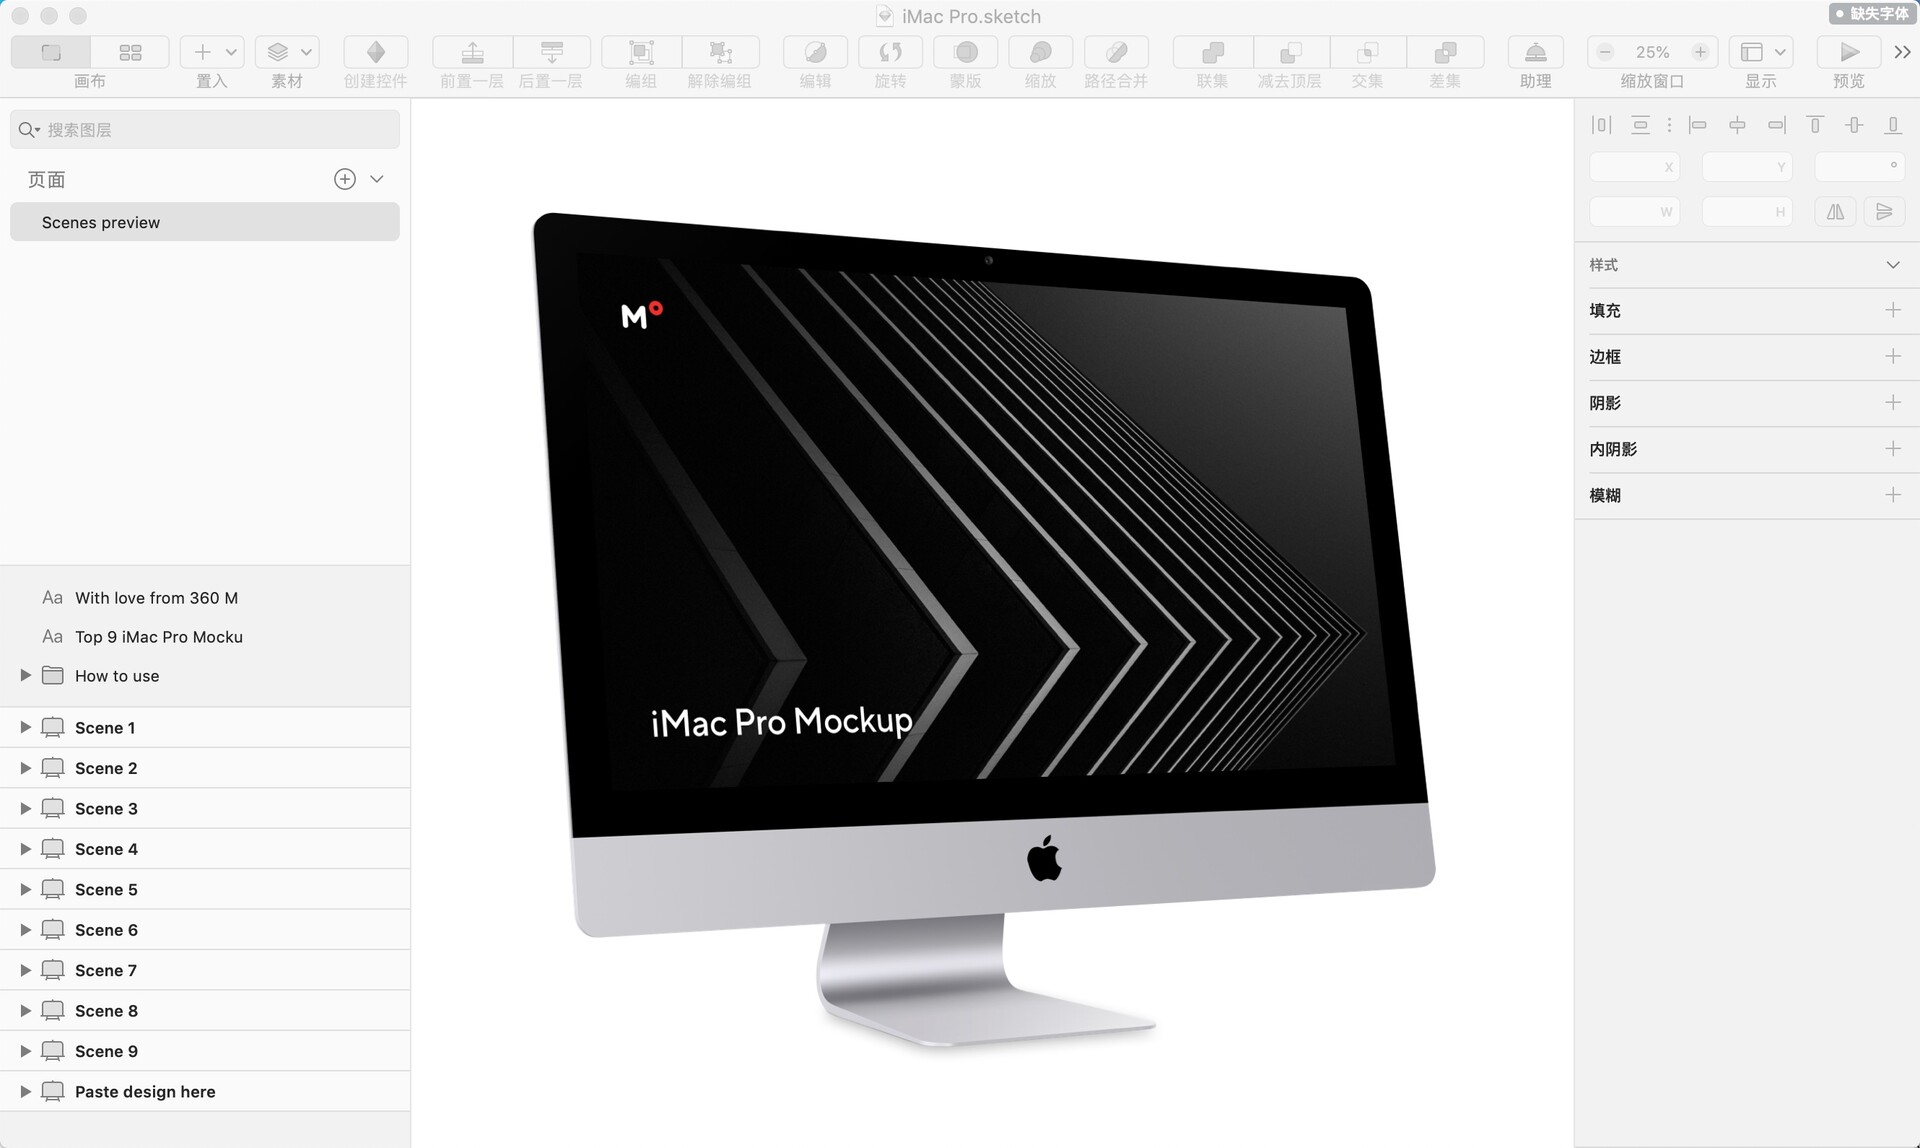 9款最流行的iMac Pro样机套件